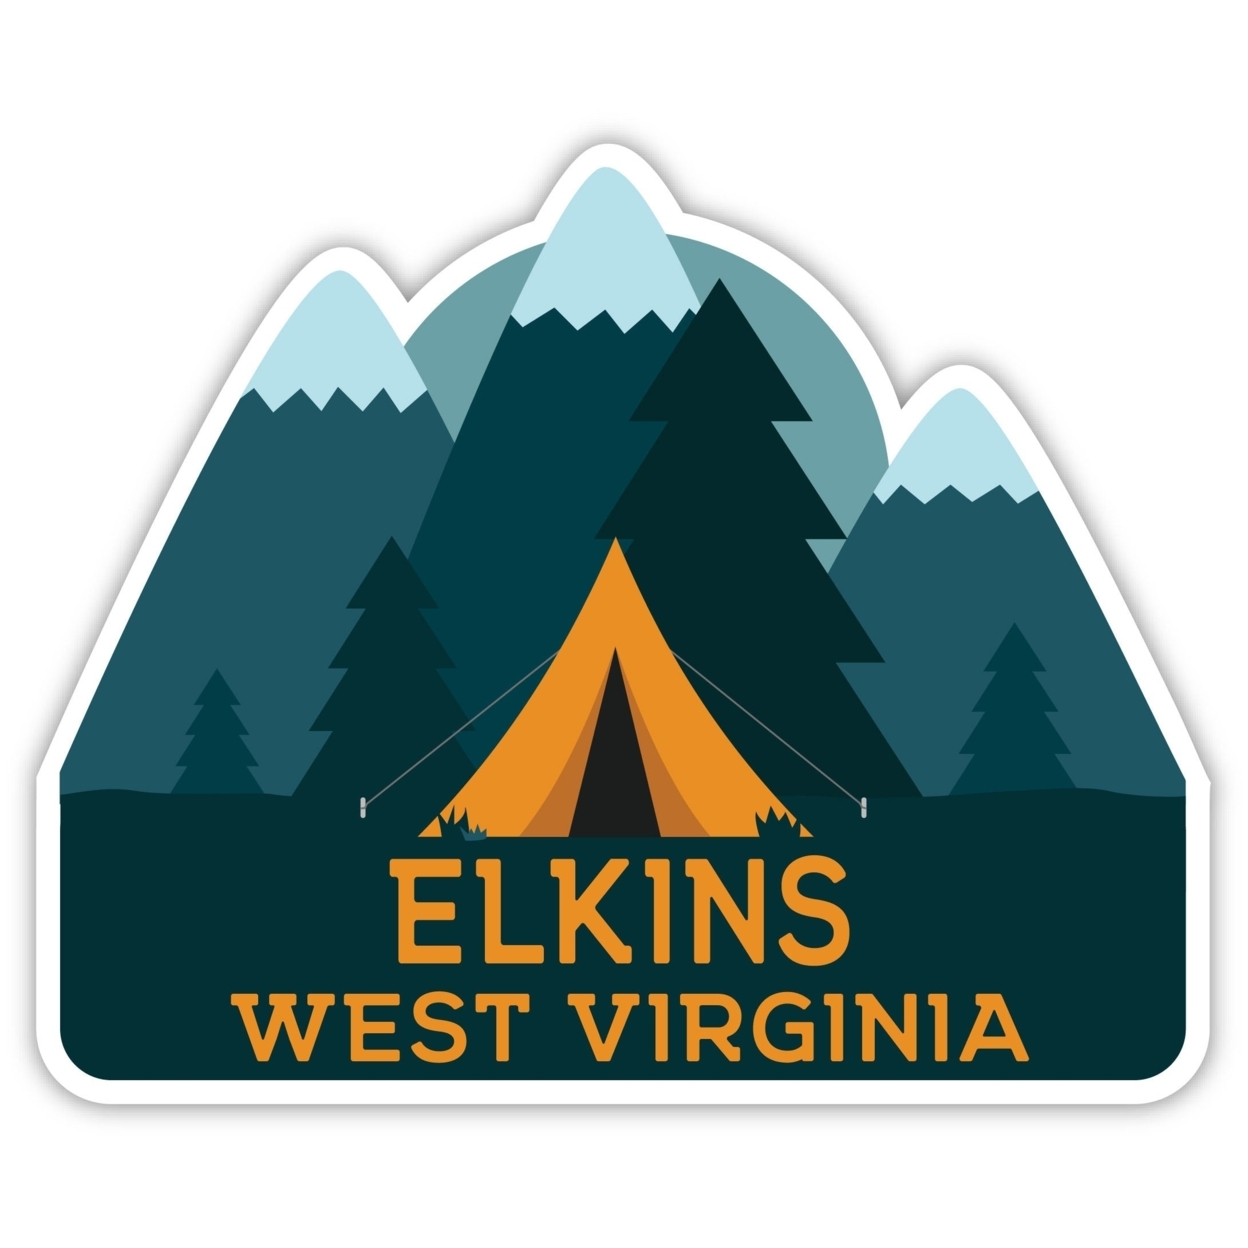 Elkins West Virginia Souvenir Decorative Stickers (Choose Theme And Size) - Single Unit, 6-Inch, Tent